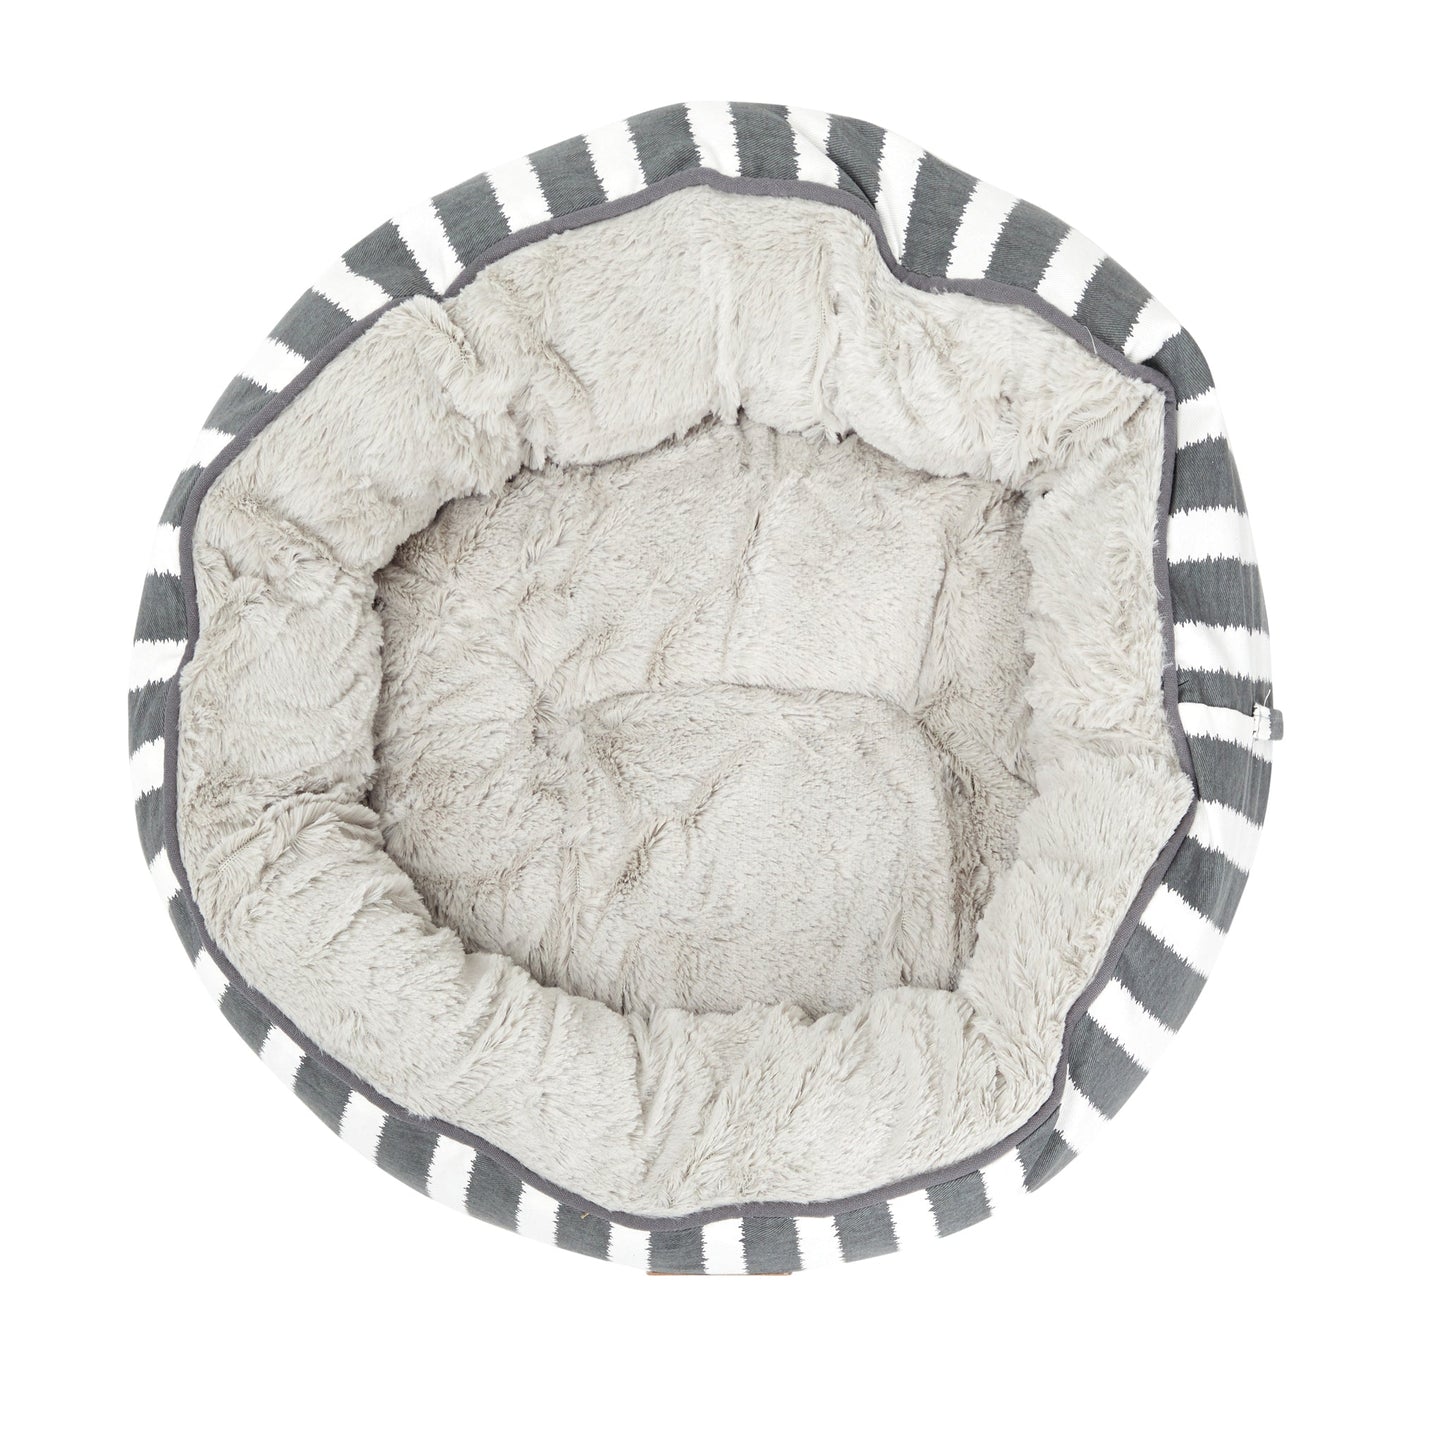 Mog & Bone 4 Seasons Reversible Circular Dog Bed - Charcoal Hamptons Stripe Print